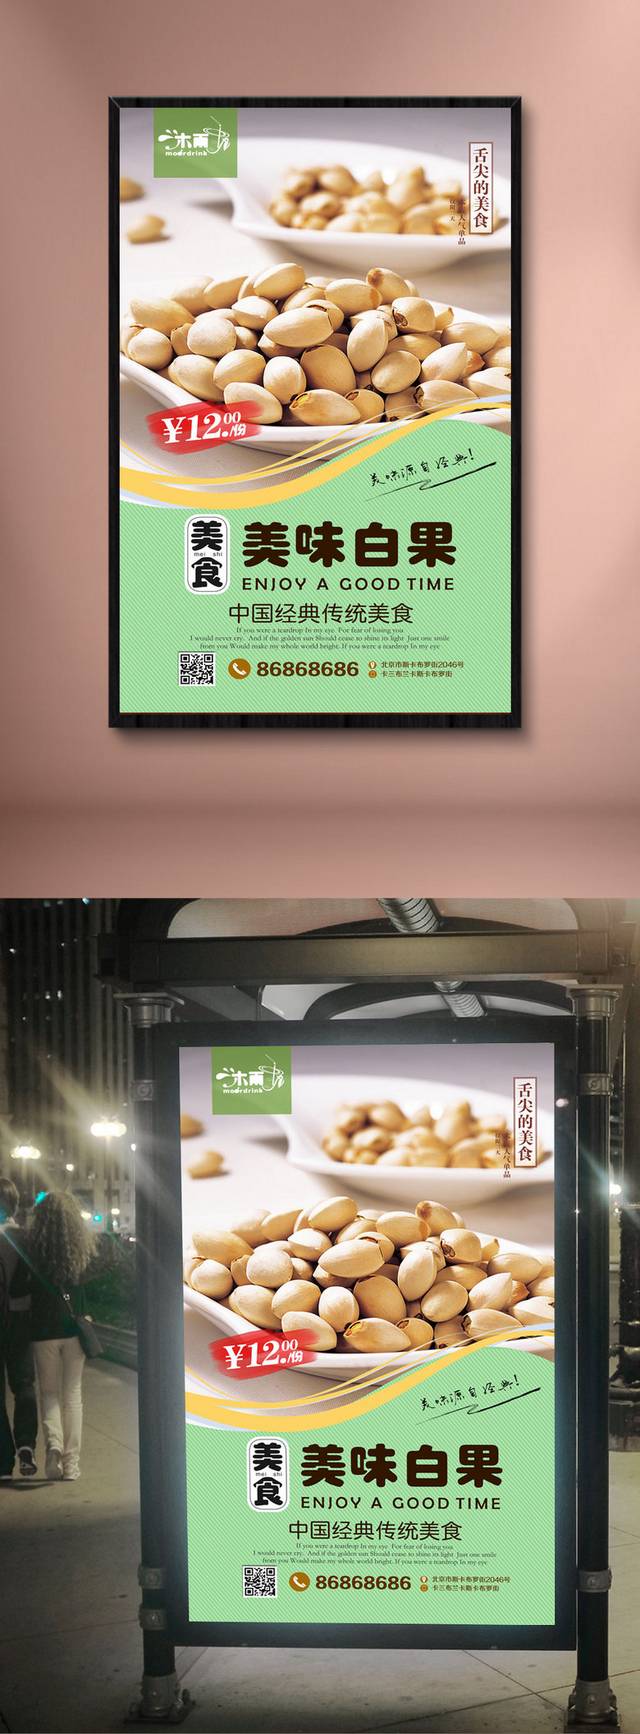 绿色清新白果海报宣传设计